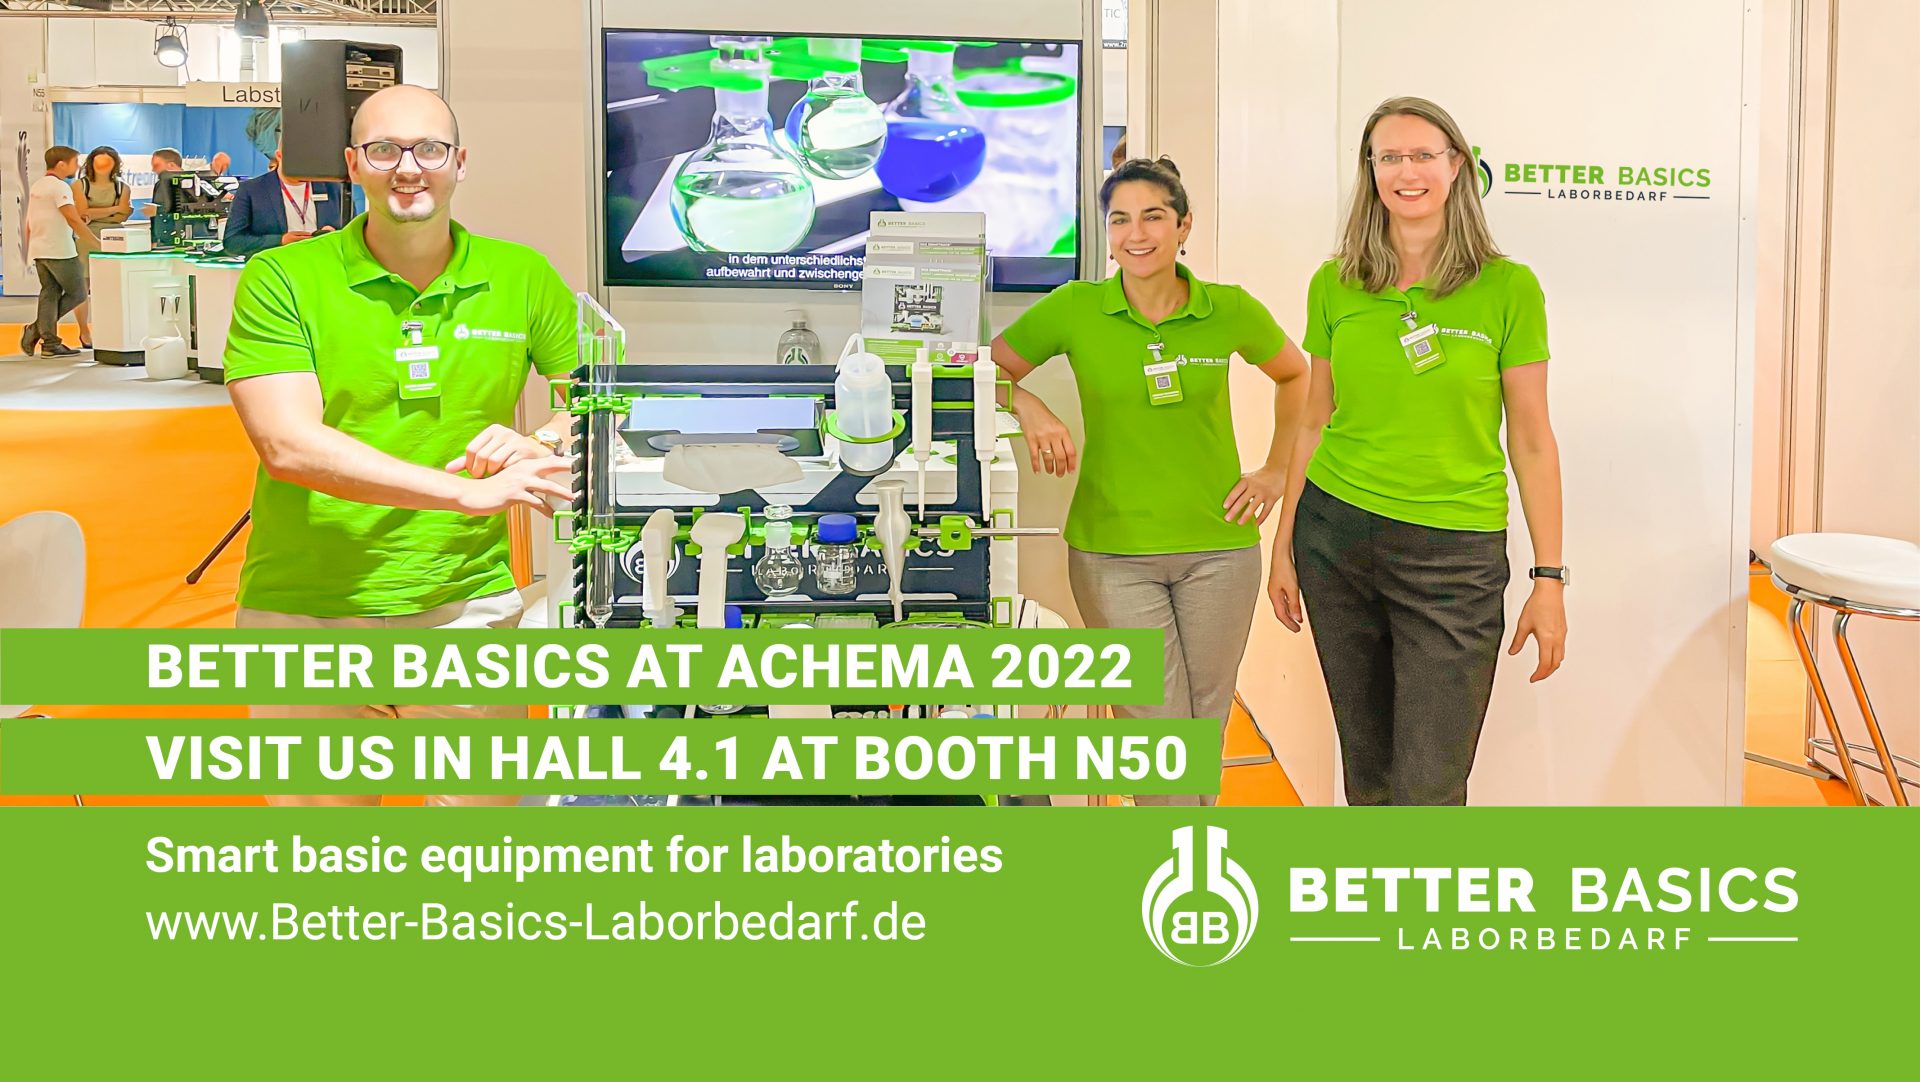 Messeteam von Better Basics Laborbedarf auf der Achema 2022 am Messetand mit SmartRack